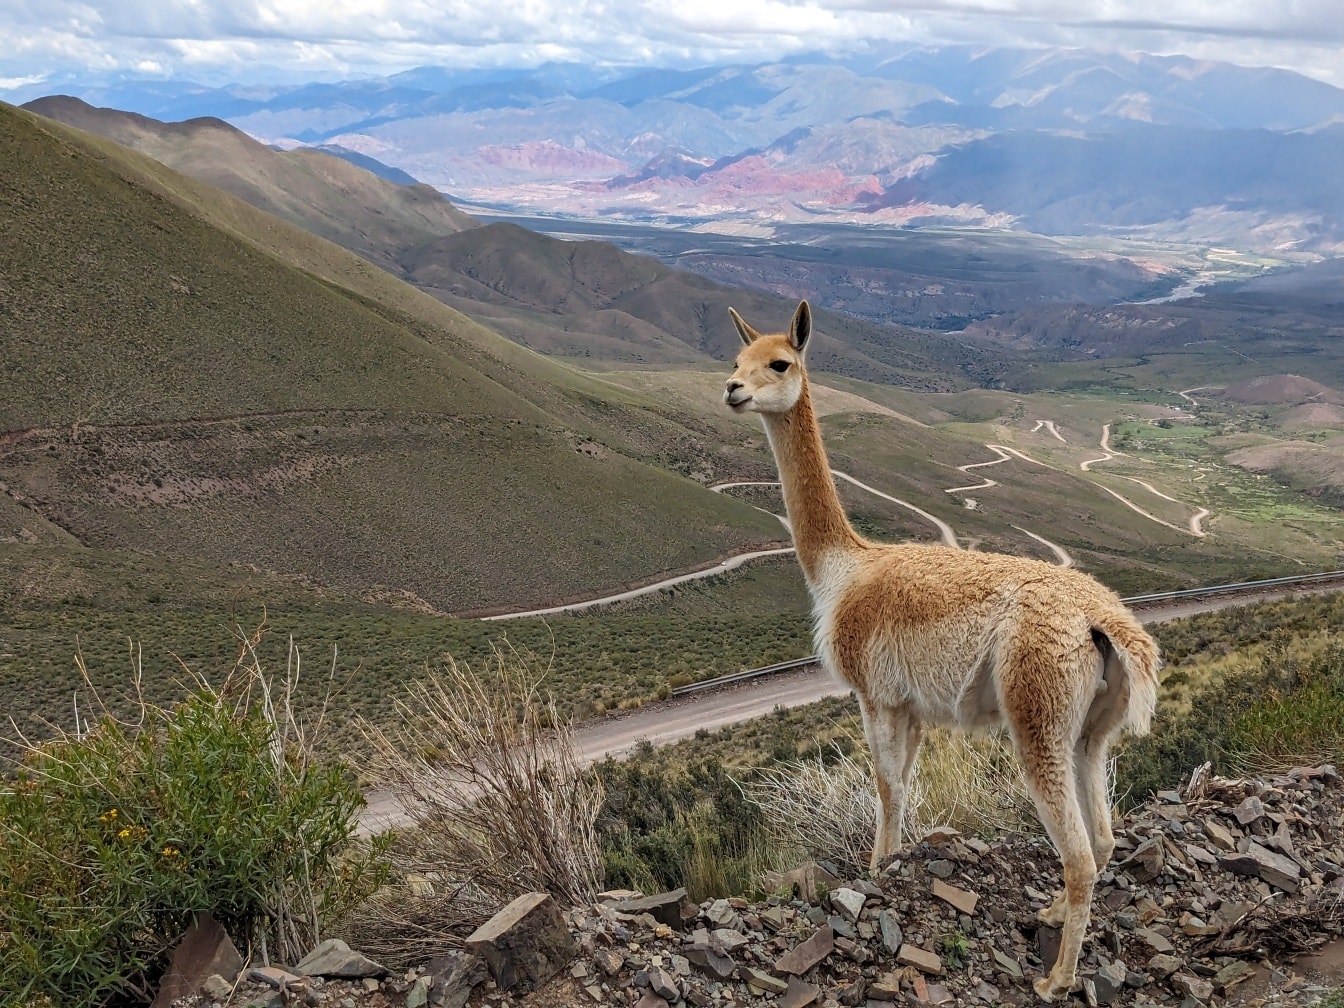 Vicuña-Tier- (Lama vicugna) in Südamerika, die auf einem Hügel in den Anden steht